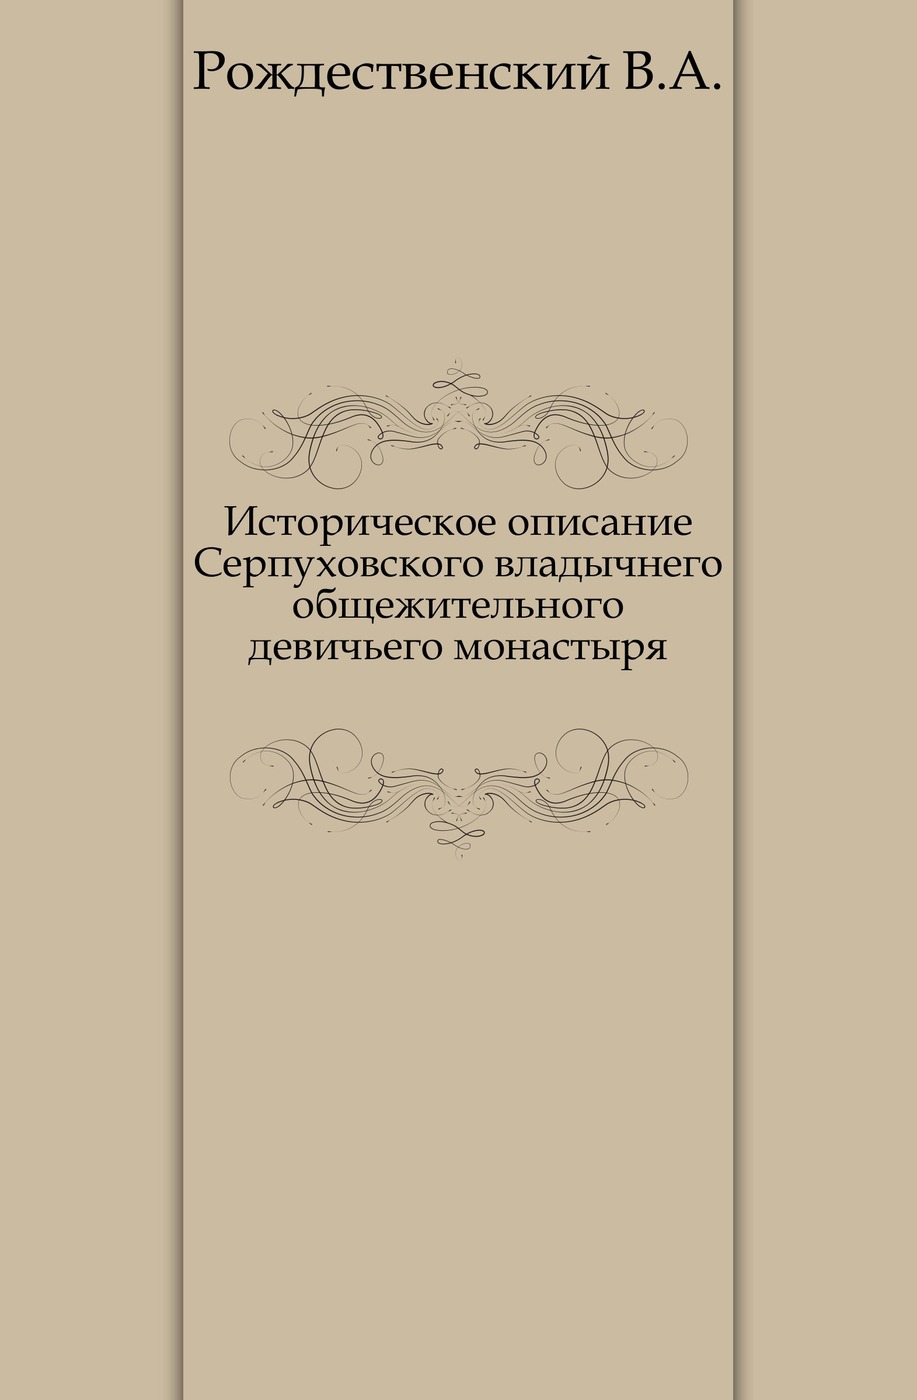 Историческое описание Серпуховского владычнего общежительного девичьего монастыря